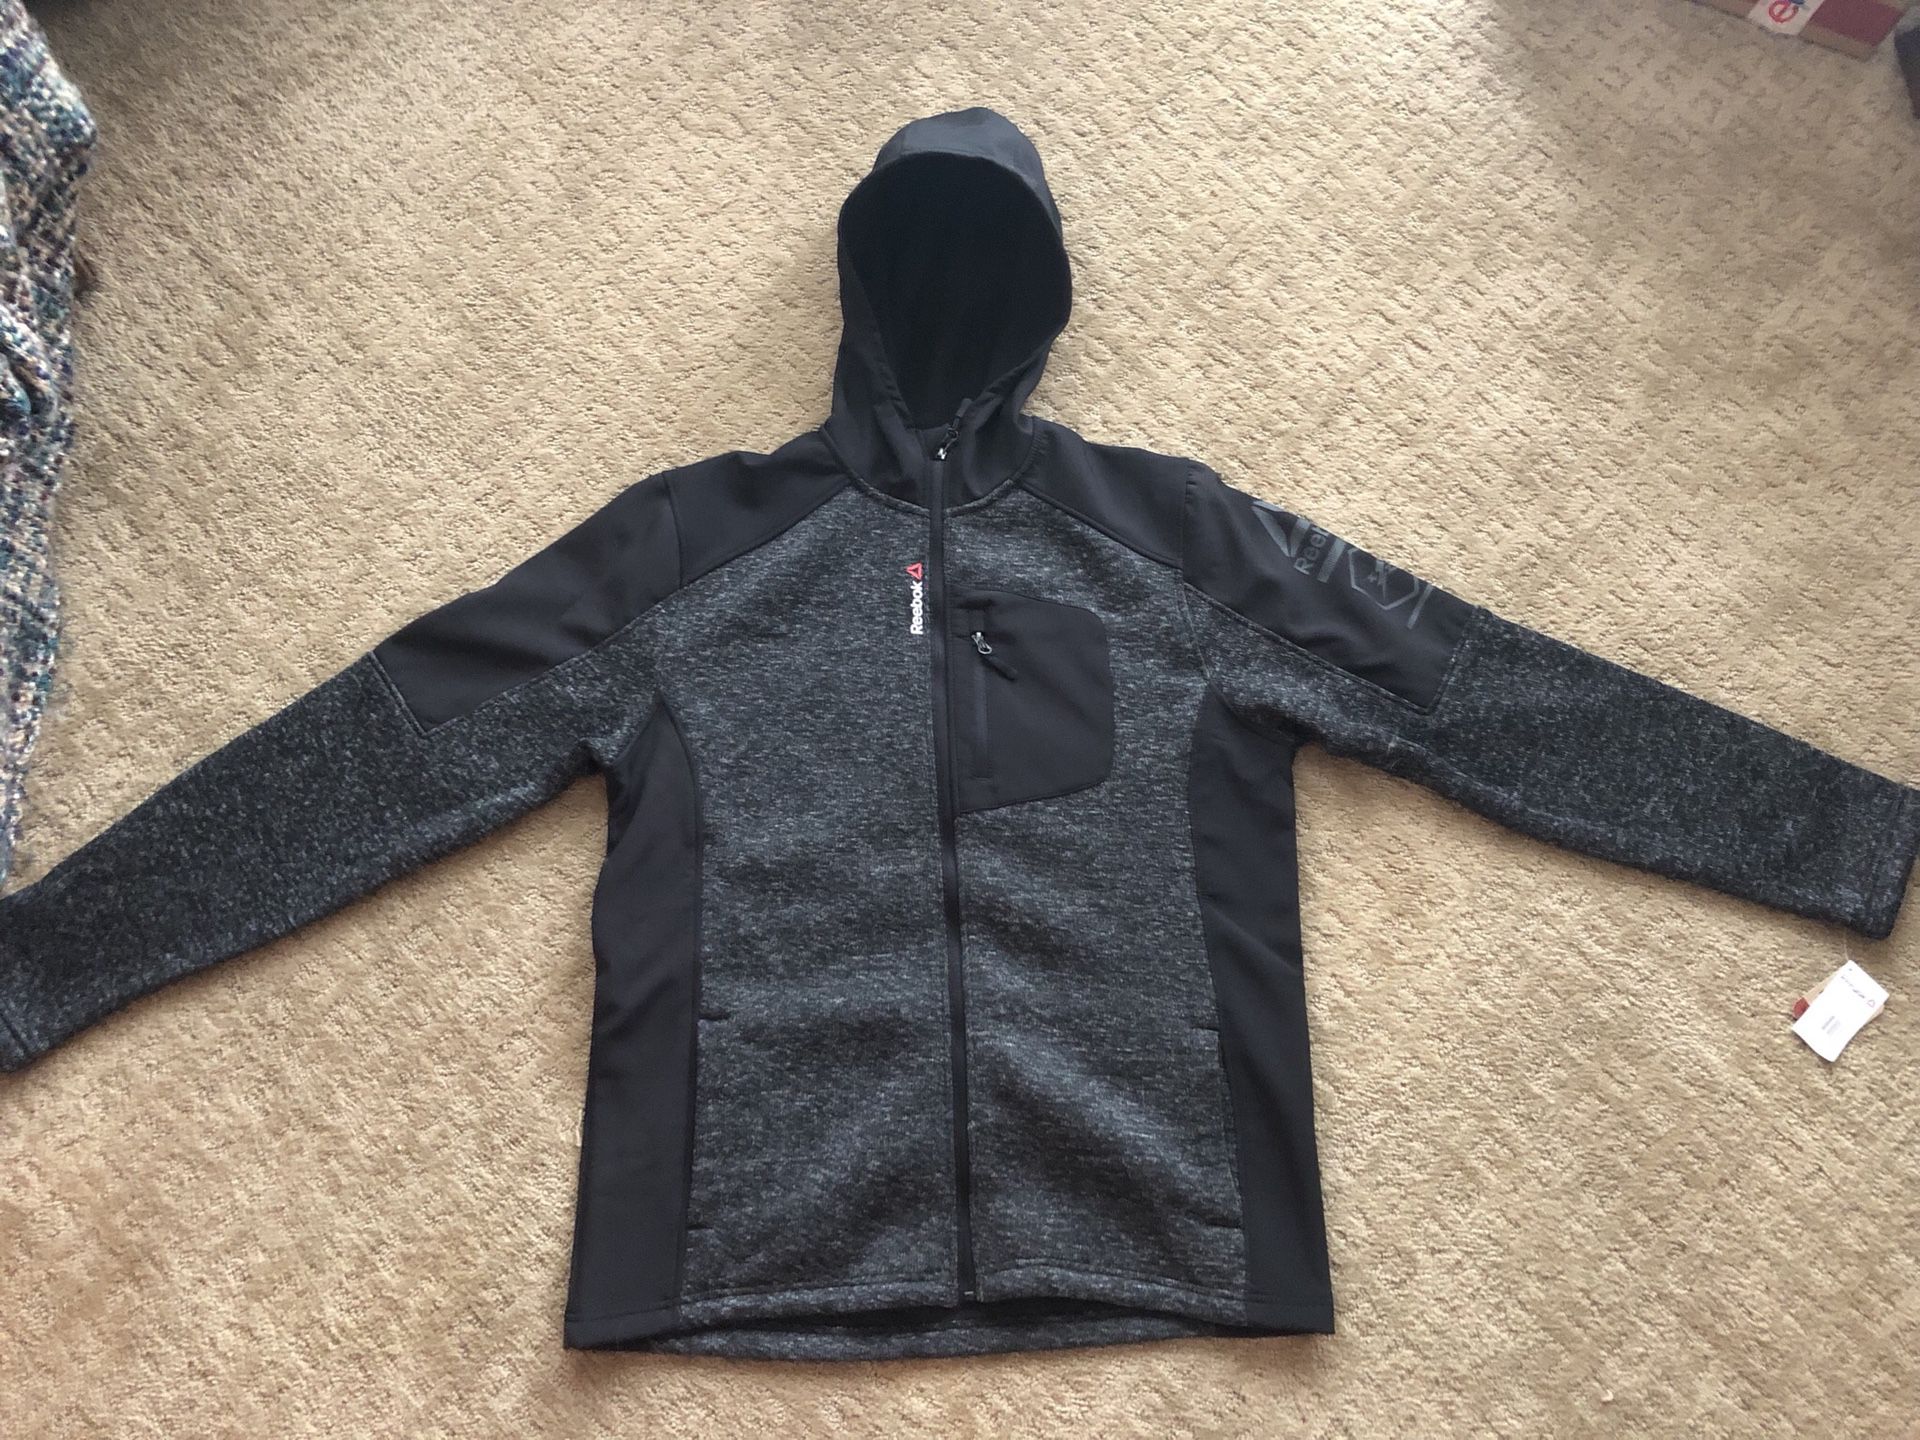 Reebok men’s jacket retail $150 size large